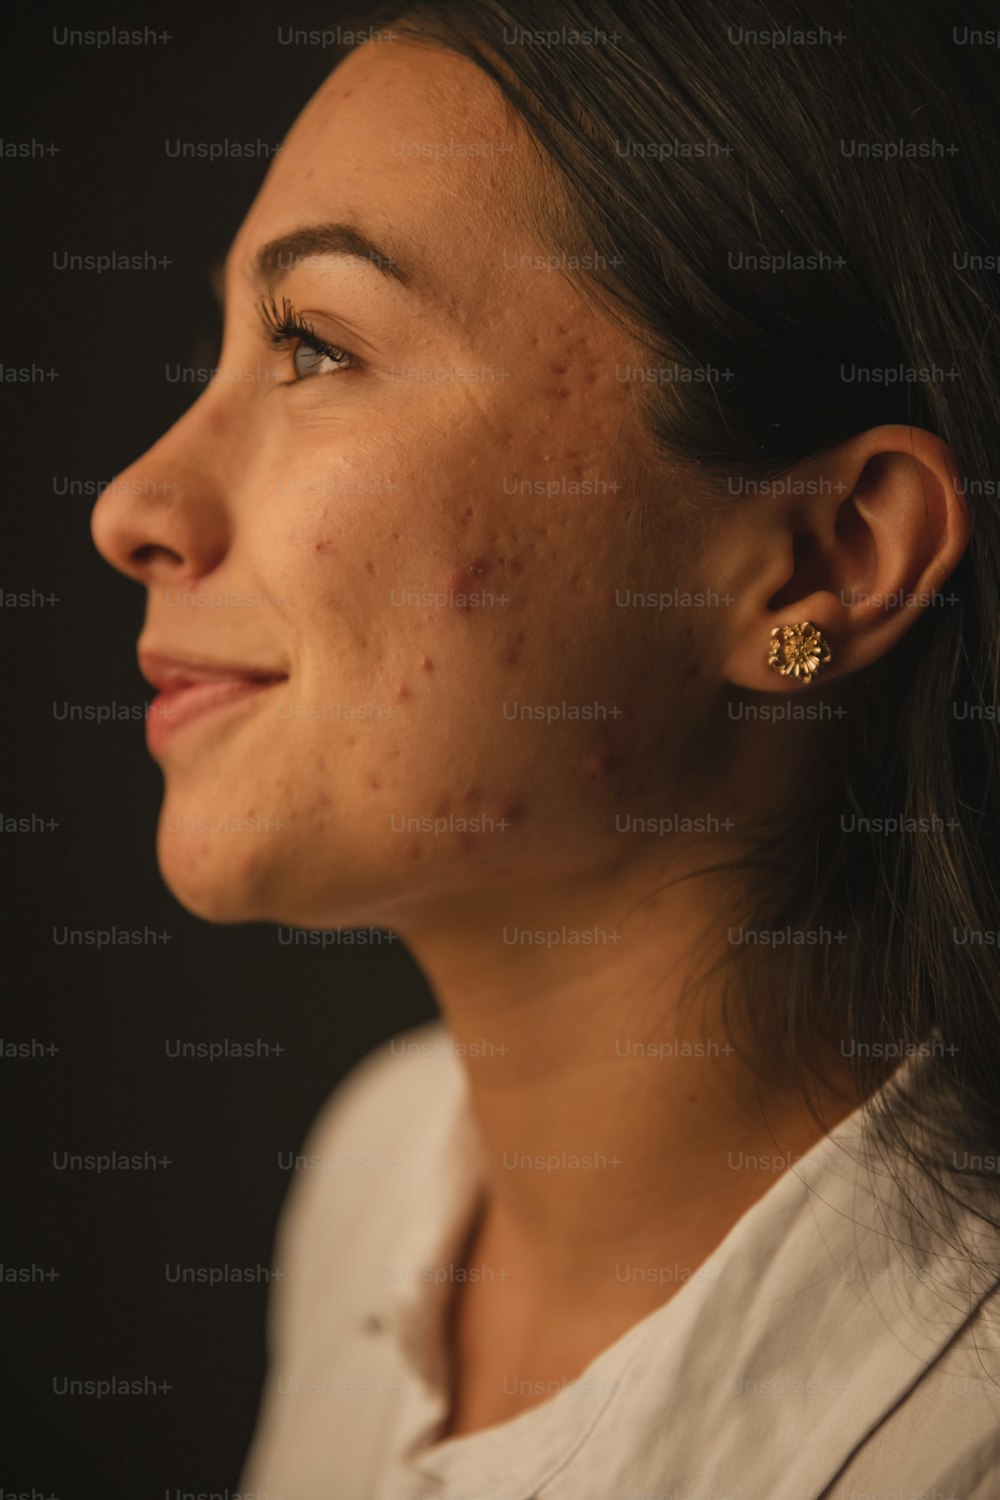 une femme avec de l’acné sur le visage